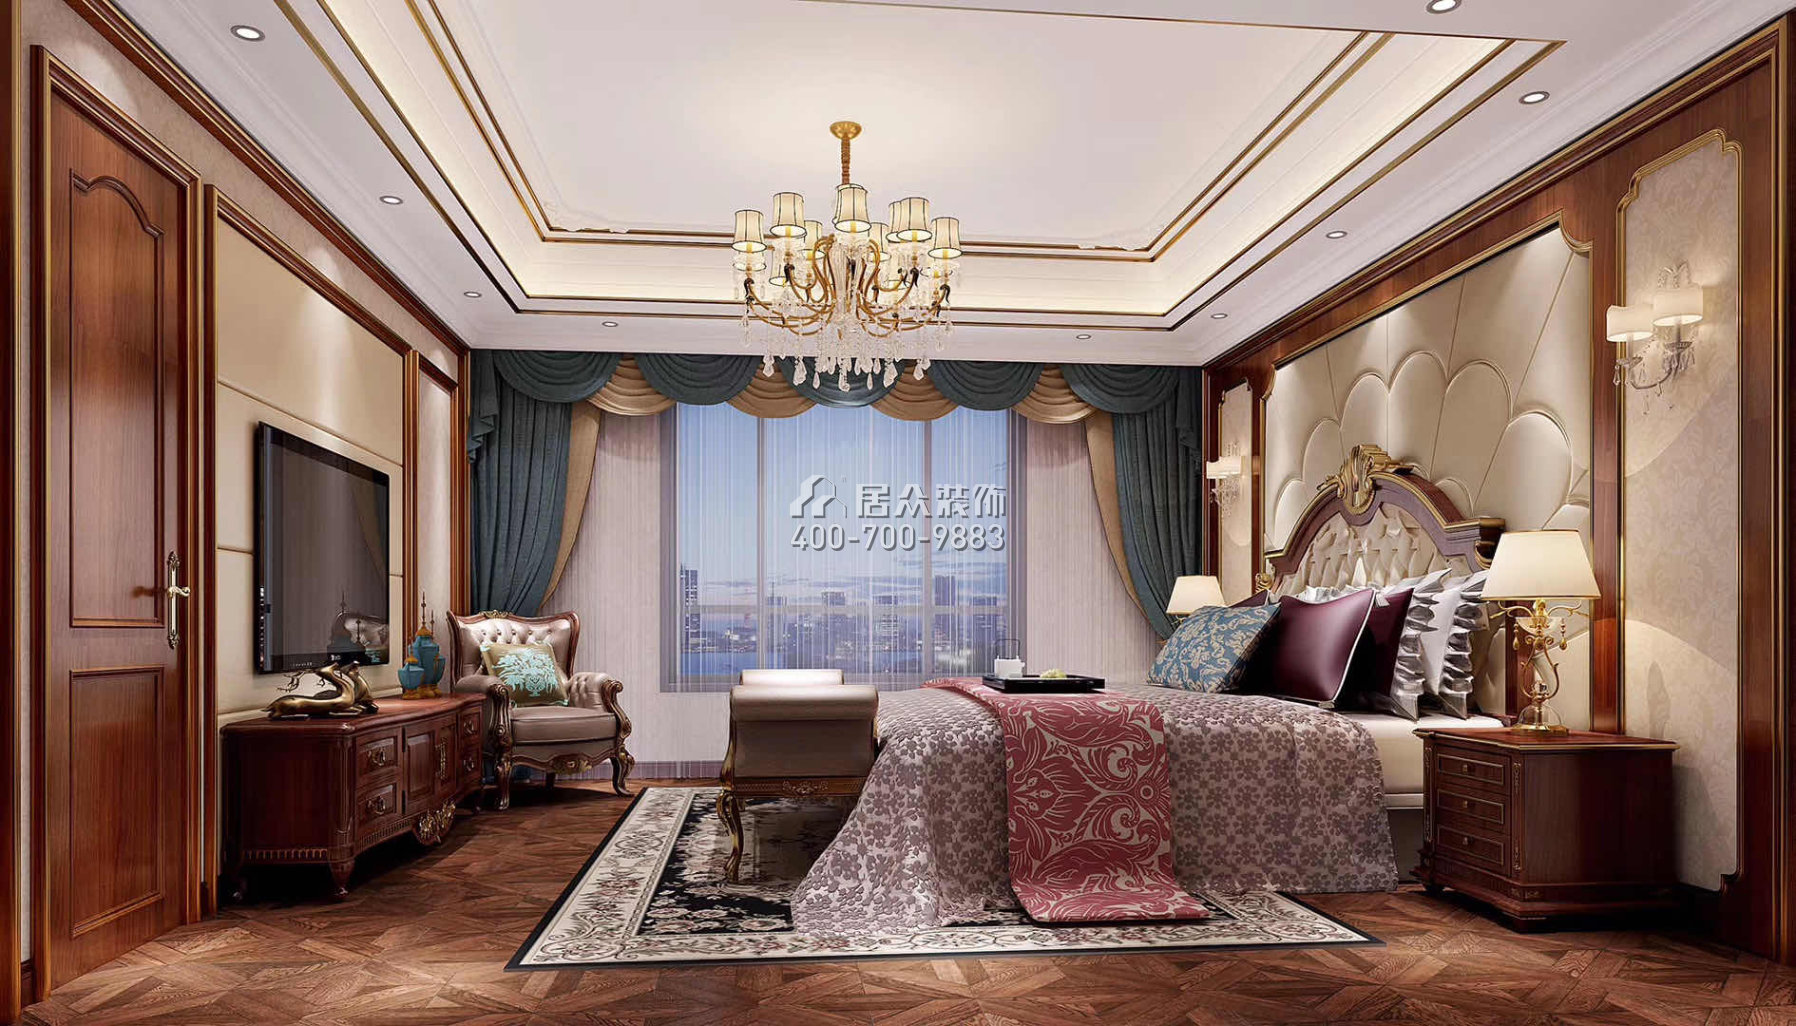 華桂園220平方米歐式風格別墅戶型臥室裝修效果圖